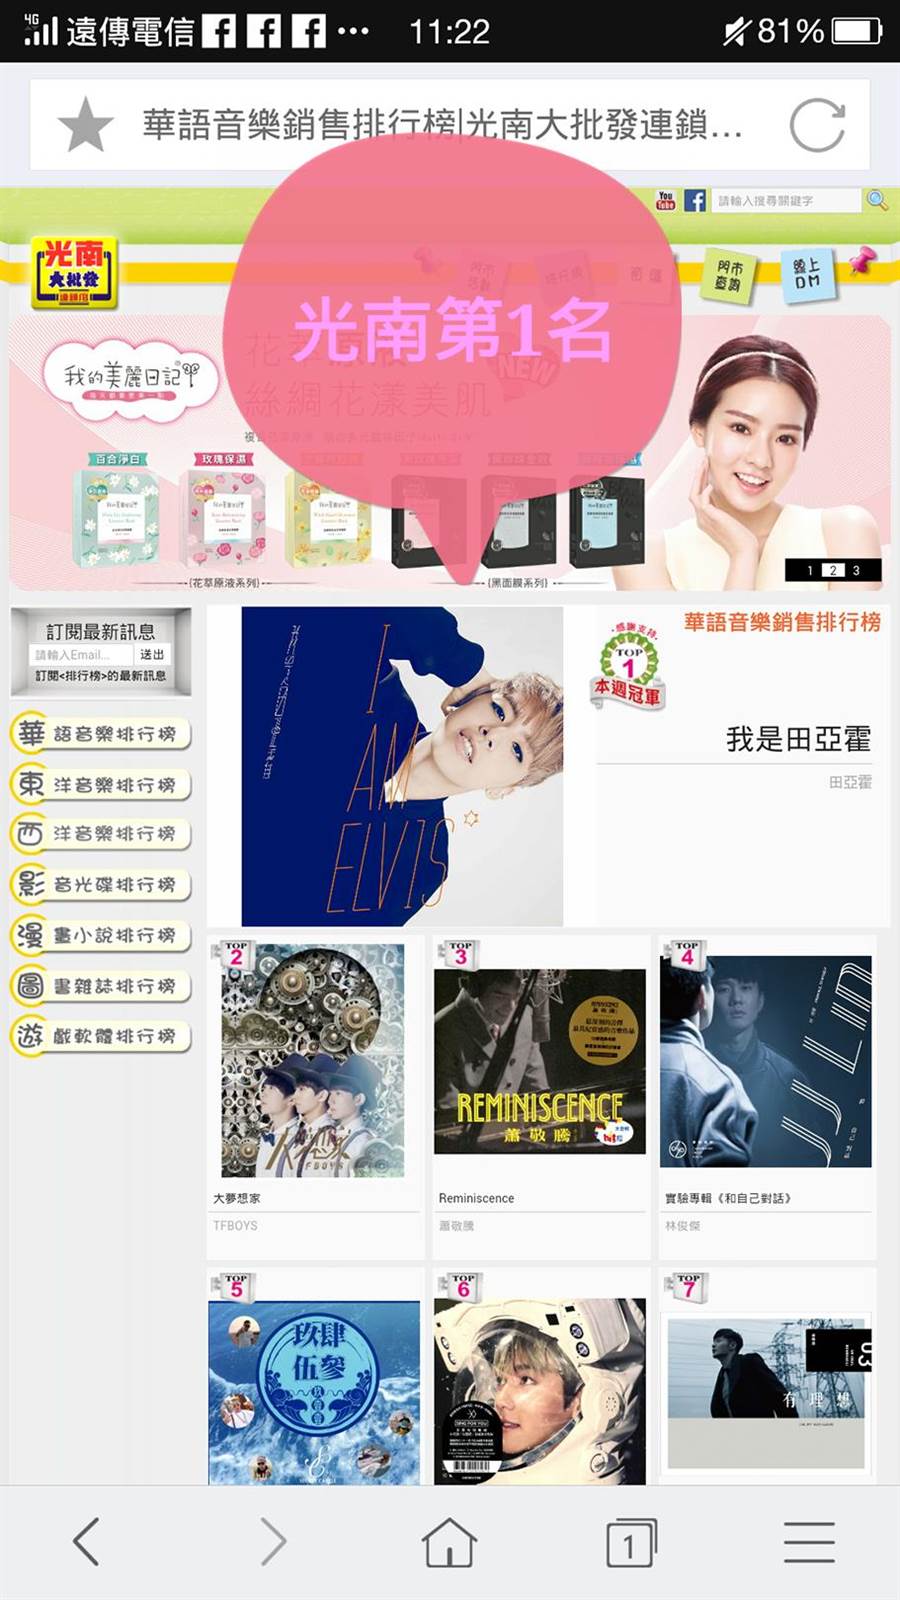 田亞霍的專輯在光南銷售排行榜名列第一。取材自網路